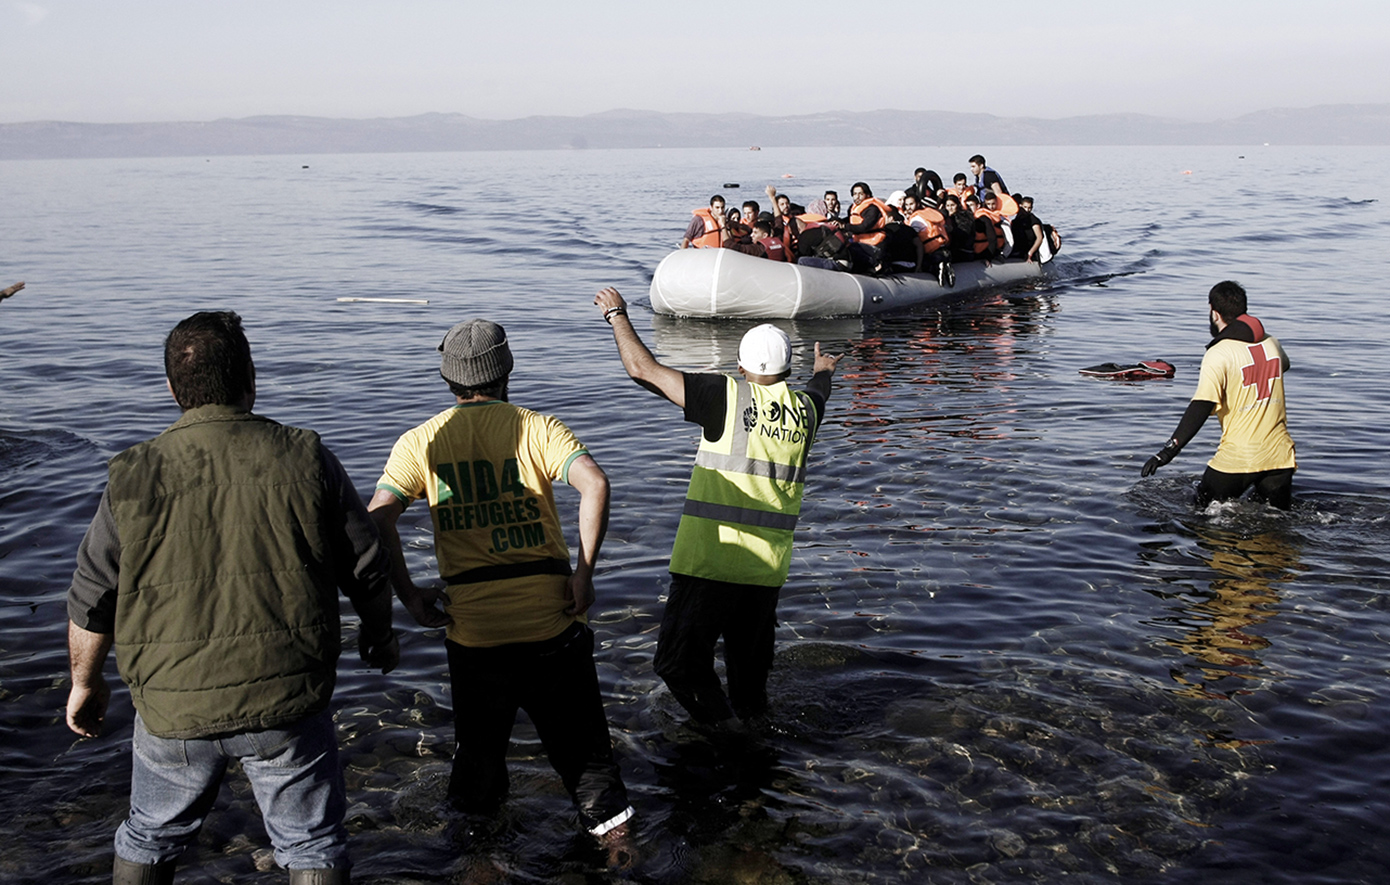 Το συμβούλιο των υπουργών της ΕΕ υιοθέτησε το σύμφωνο για το μεταναστευτικό και το άσυλο